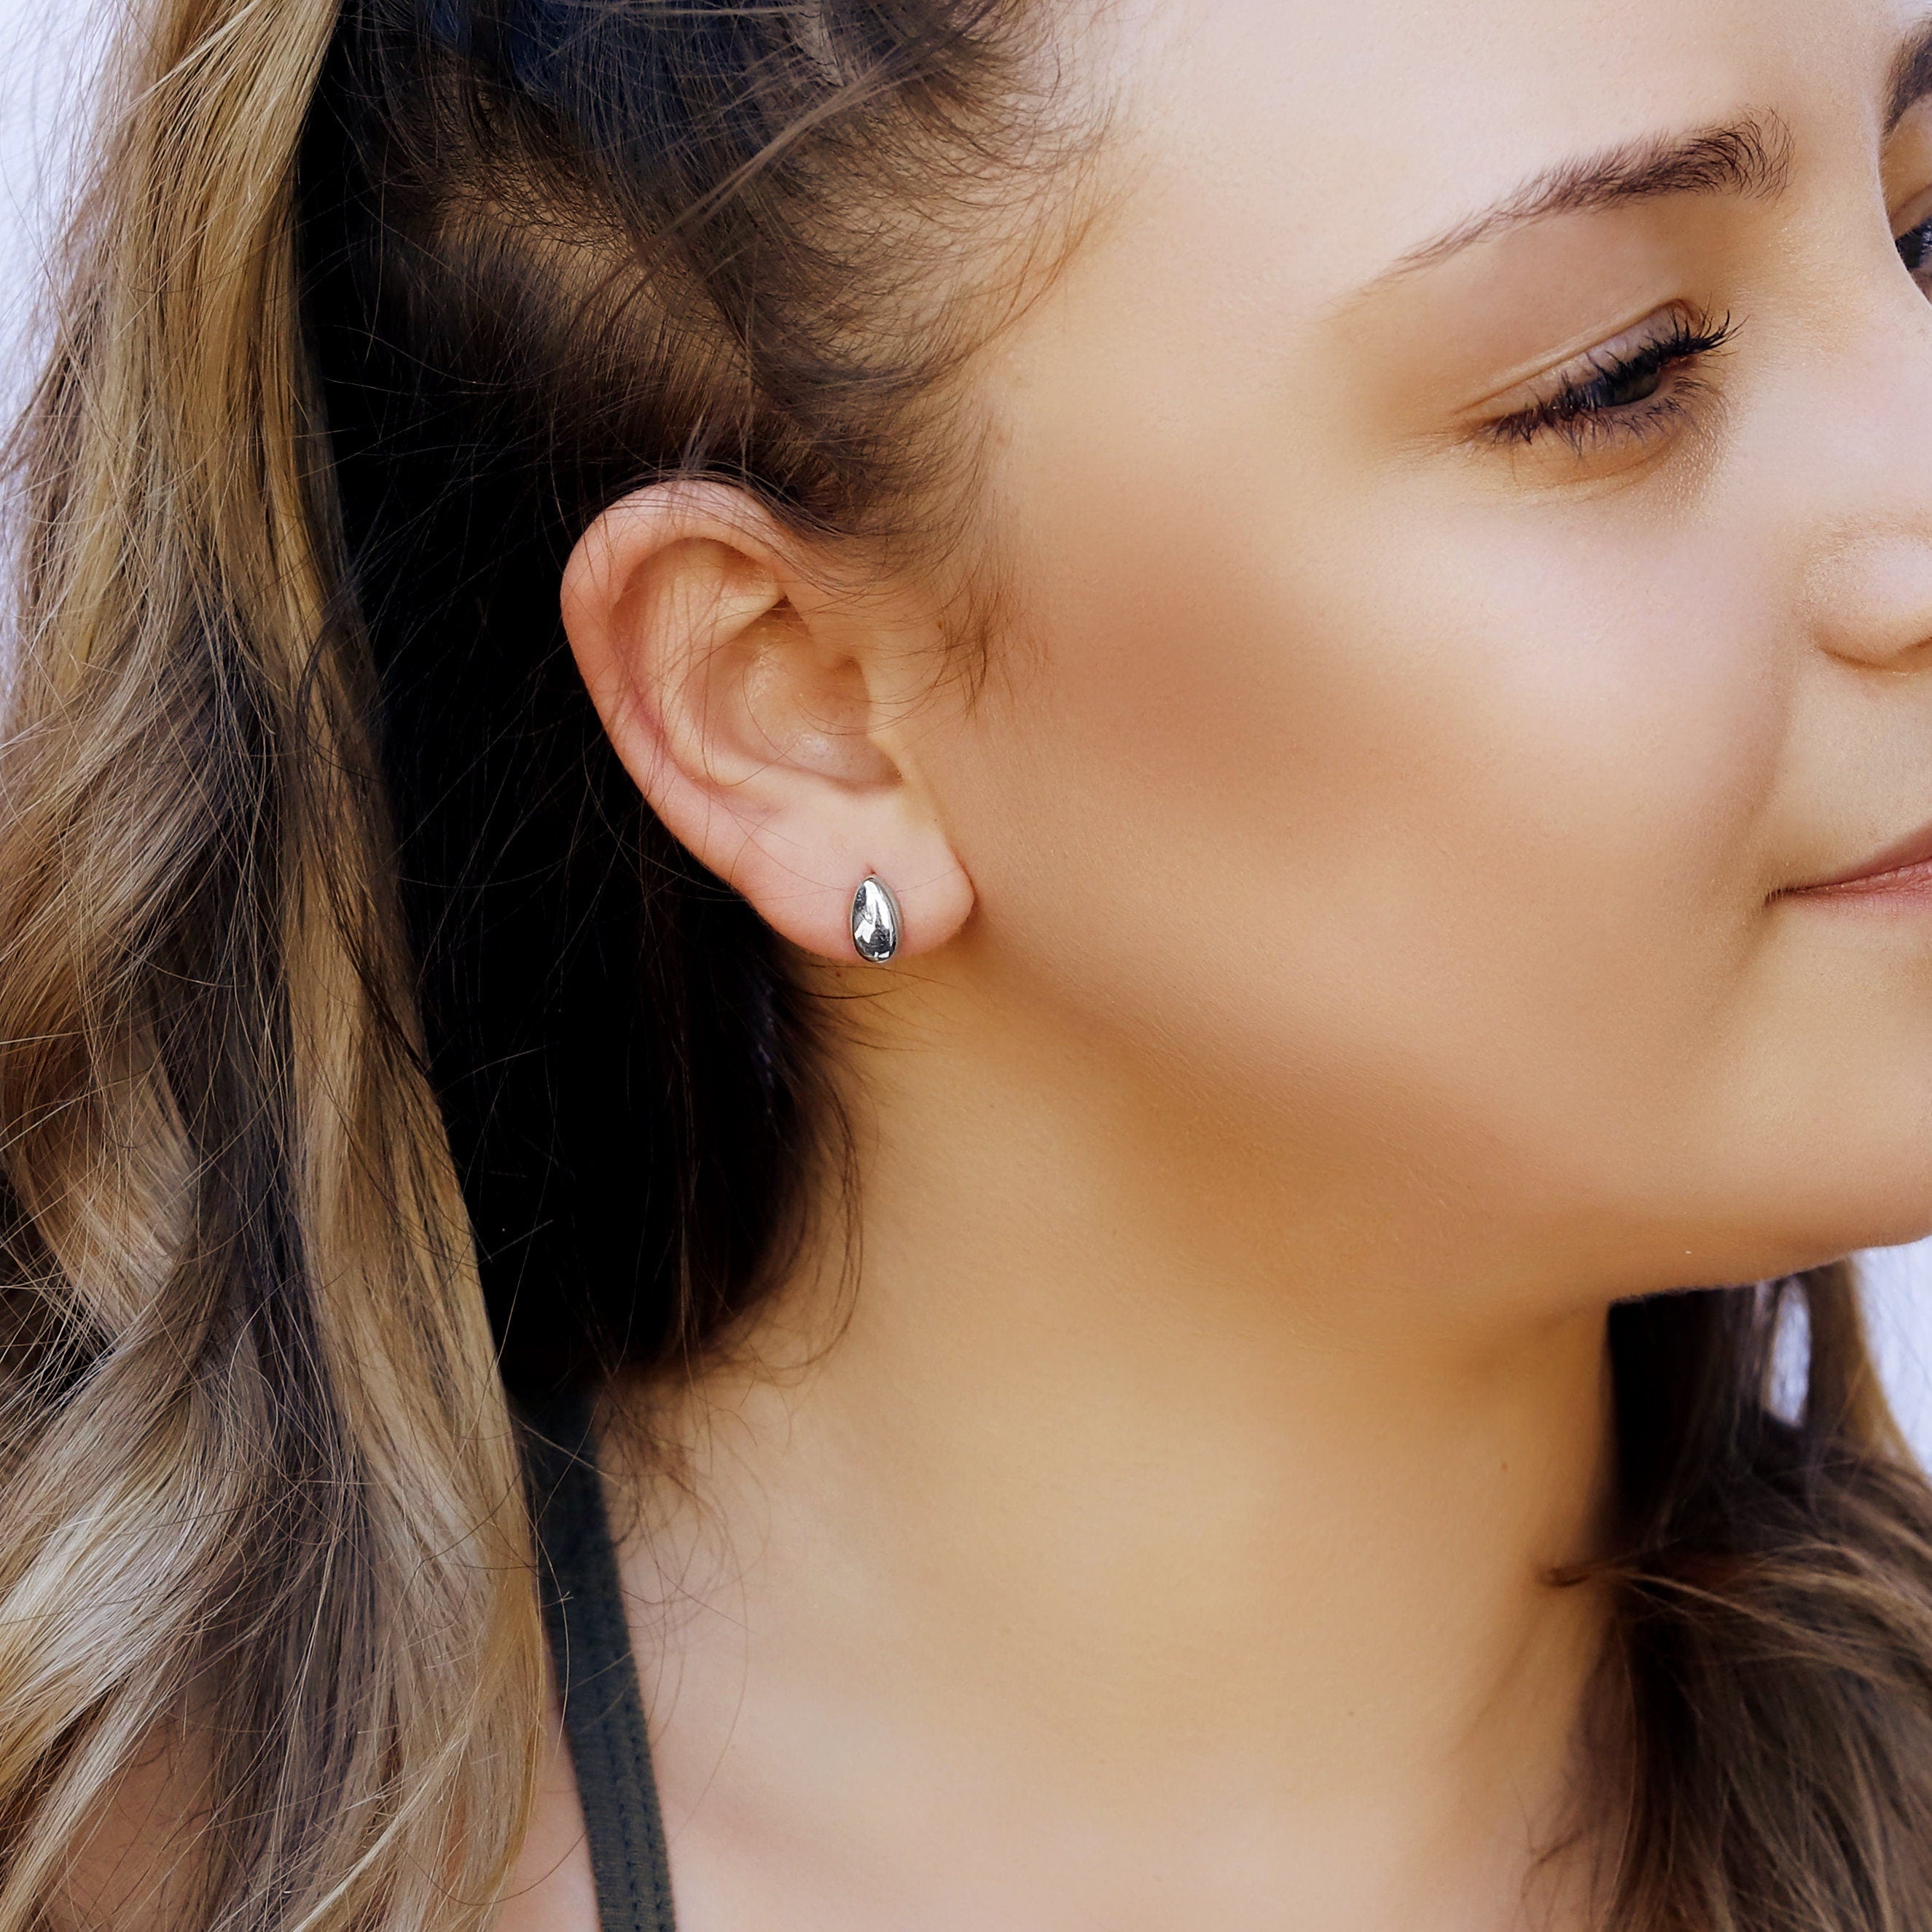 Tiny drop stud earrings • dainty earrings • Handmade teardrop stud earrings • tiny stud earrings • small stud earrings • minimalist earrings